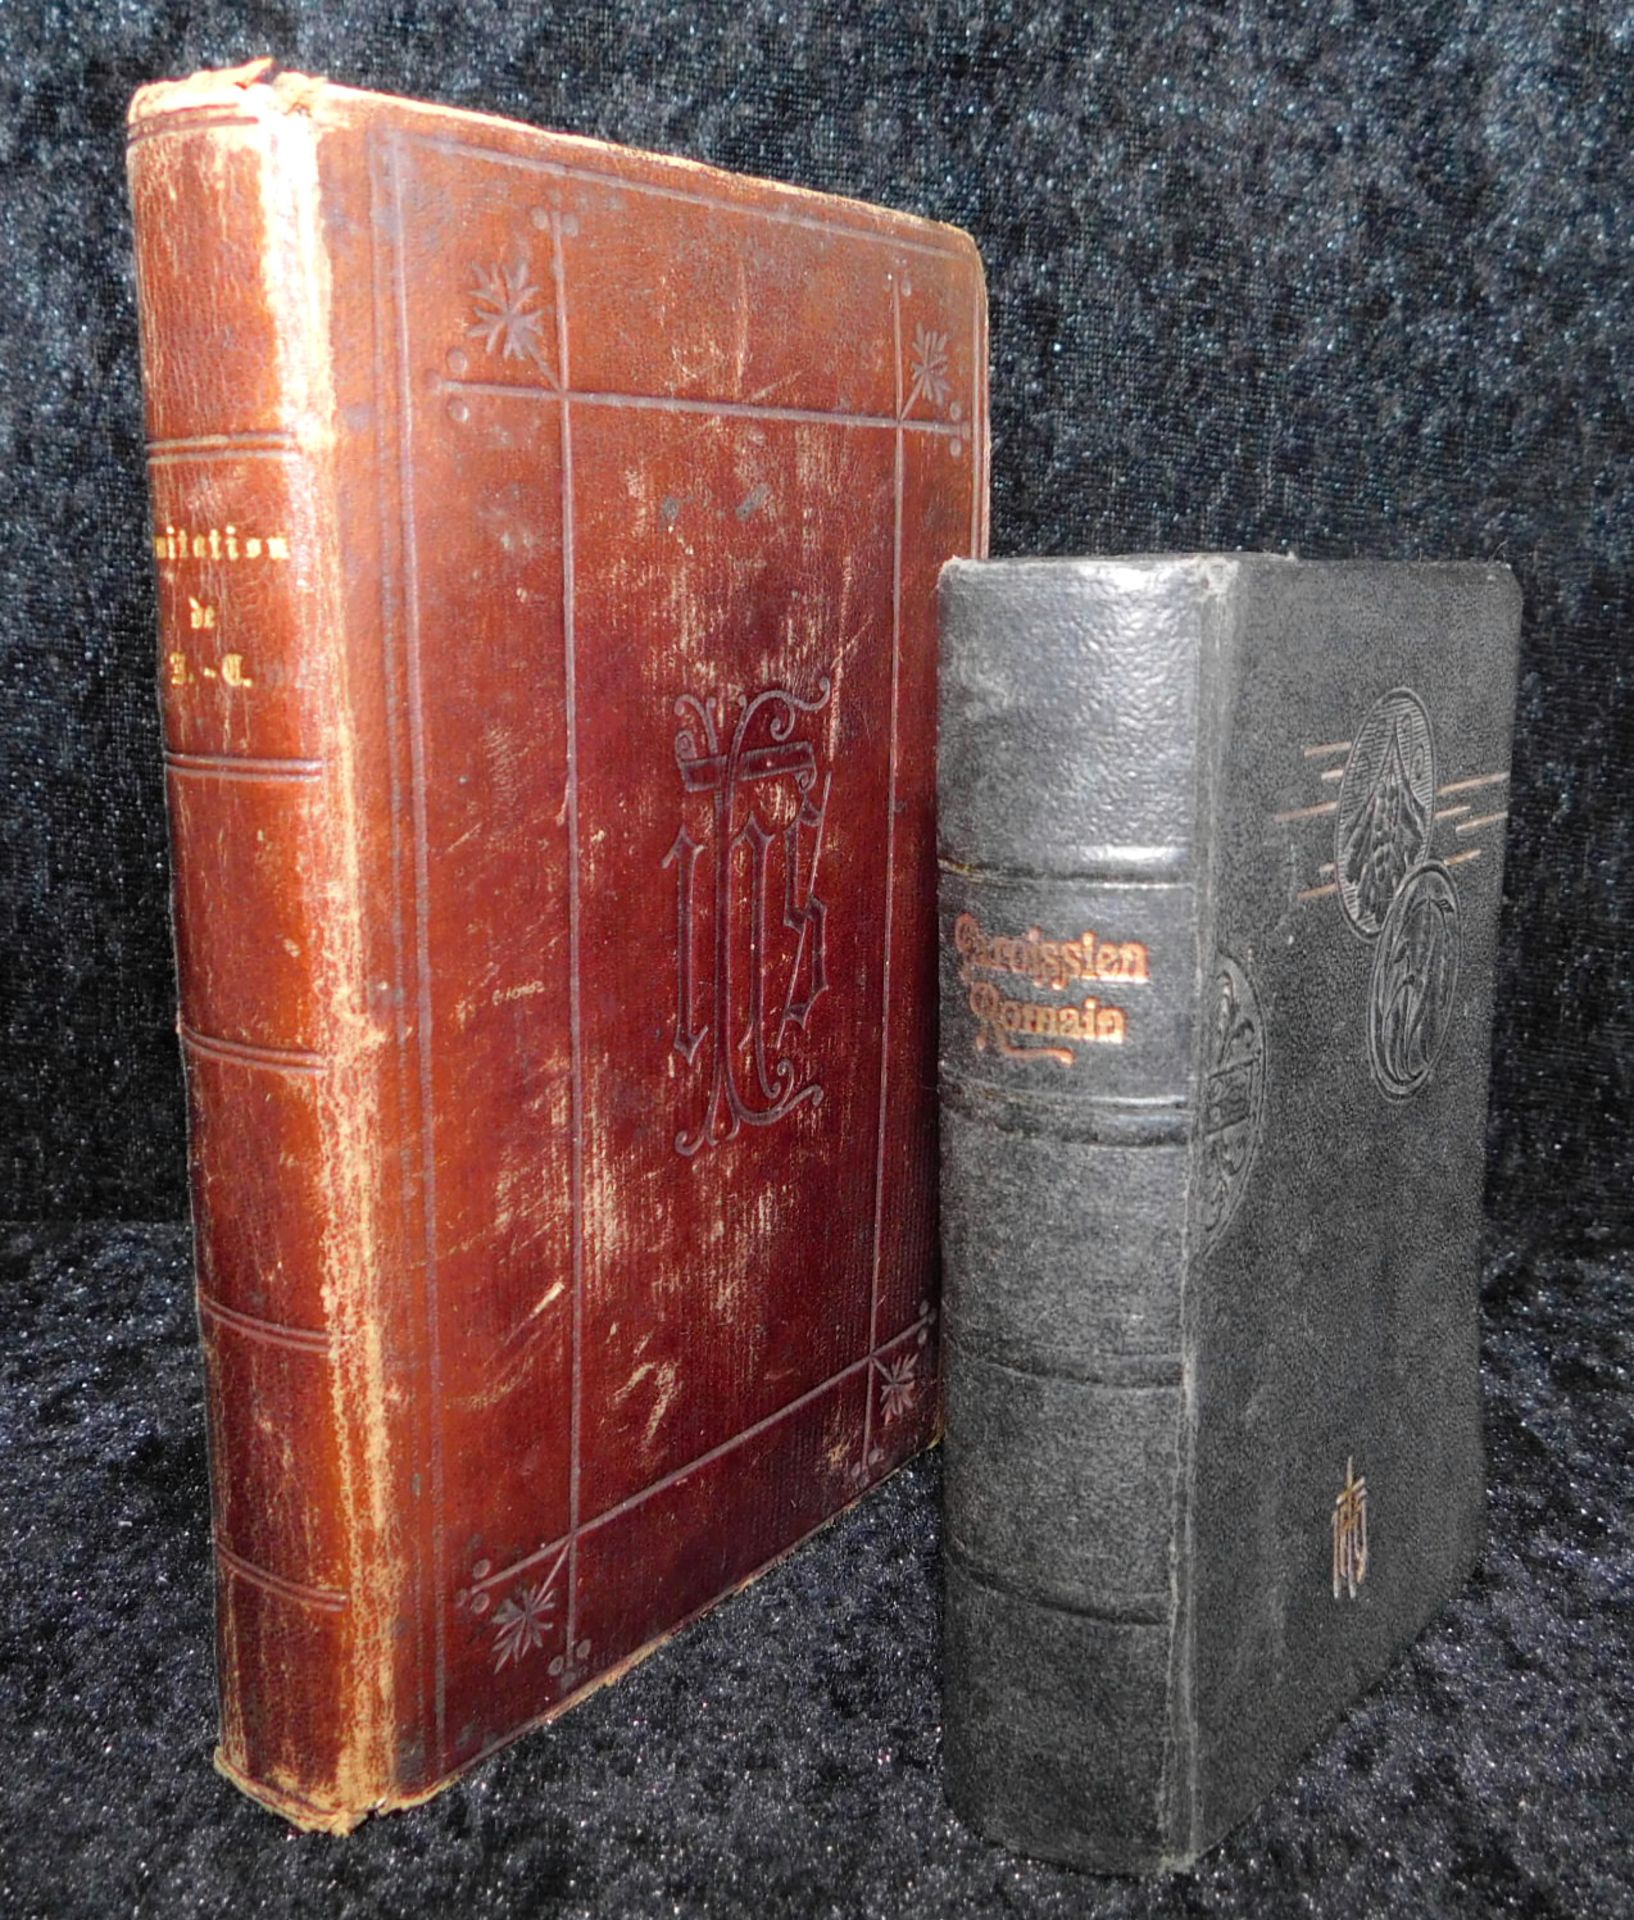 2 Gebetbücher in französischer Sprache, Belgien, 1878 und 1923